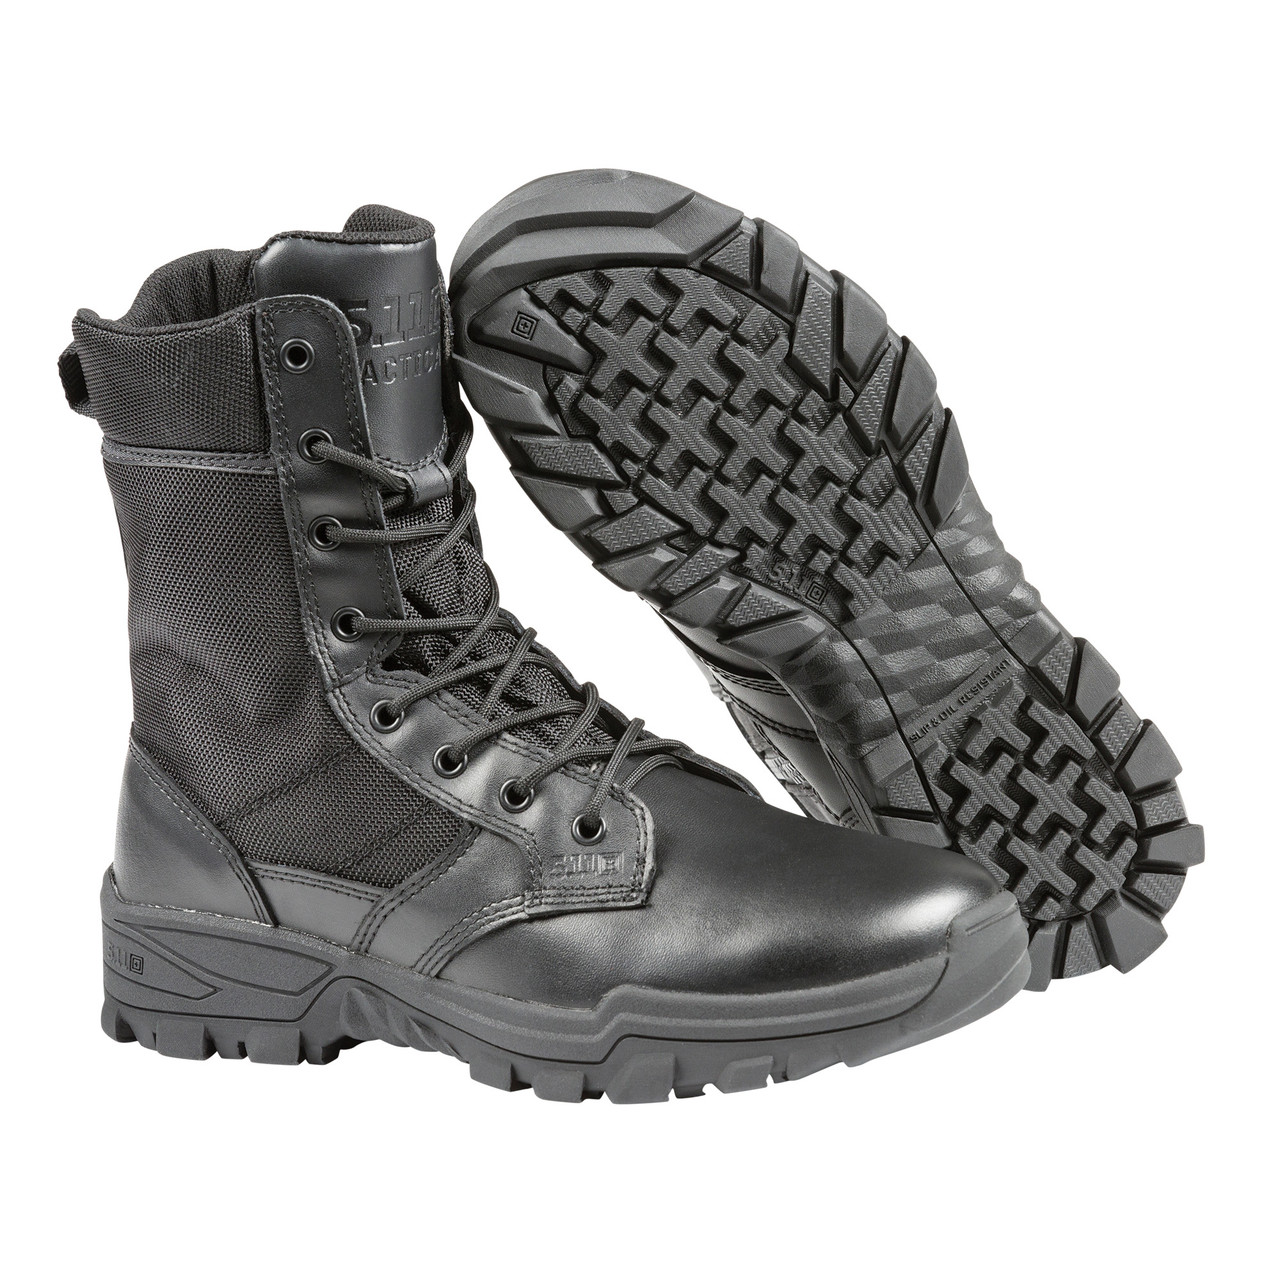 5.11 Tactical Men's Speed 3.0 Side-Zip Tactical Boots